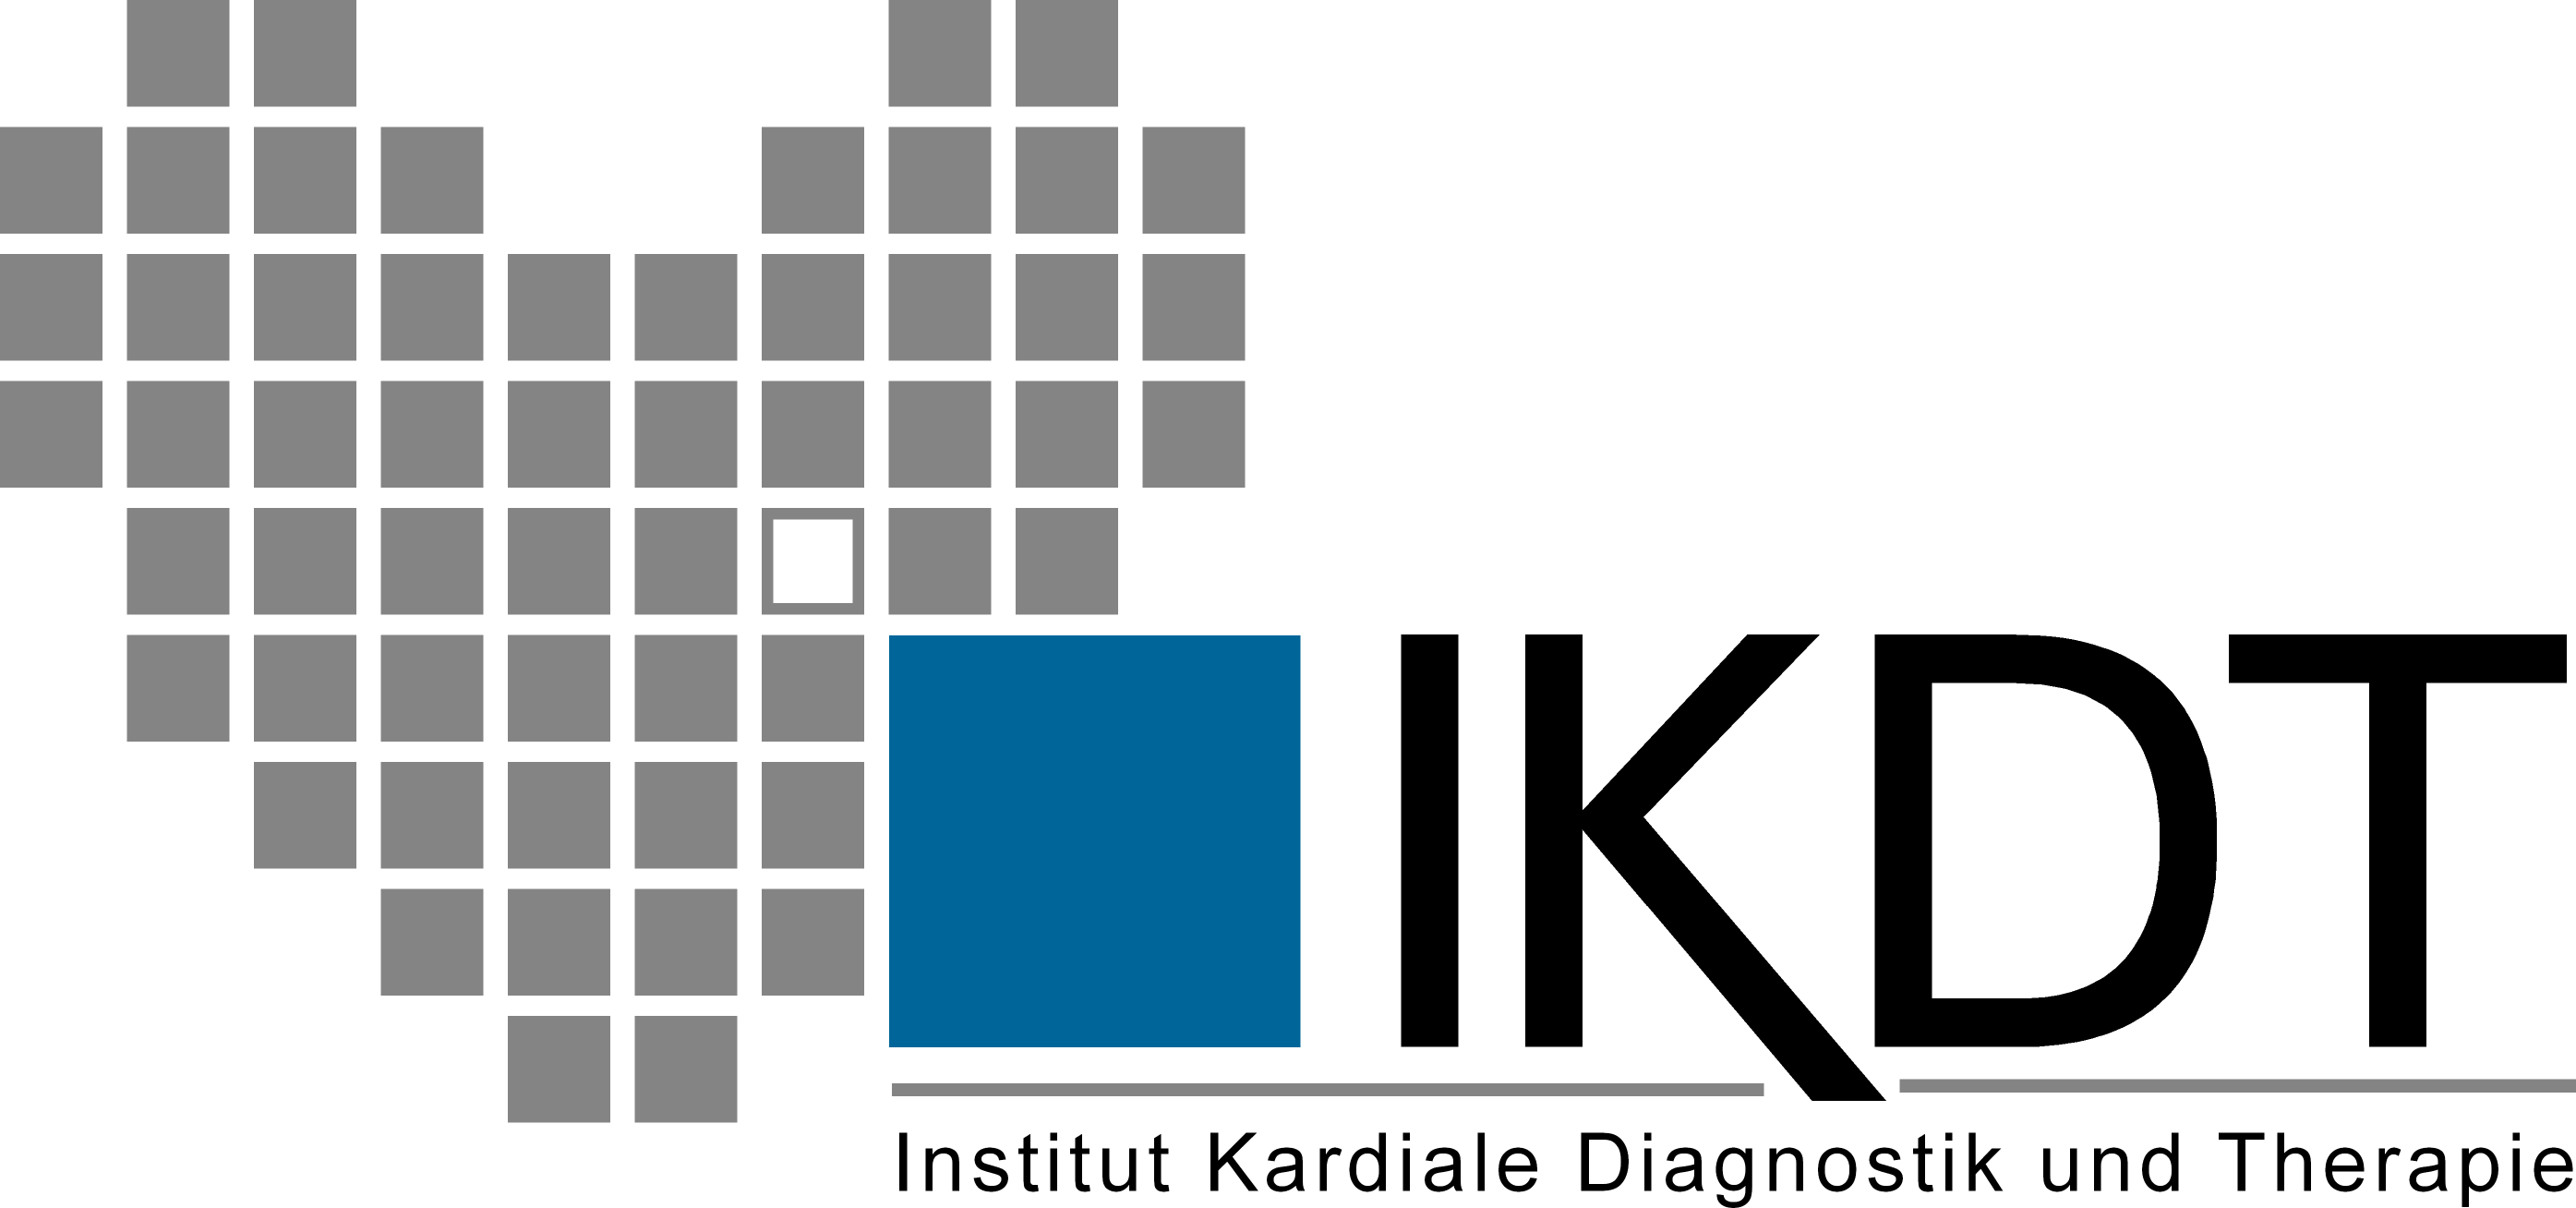 IKDT Institut Kardiale Diagnostik und Therapie GmbH